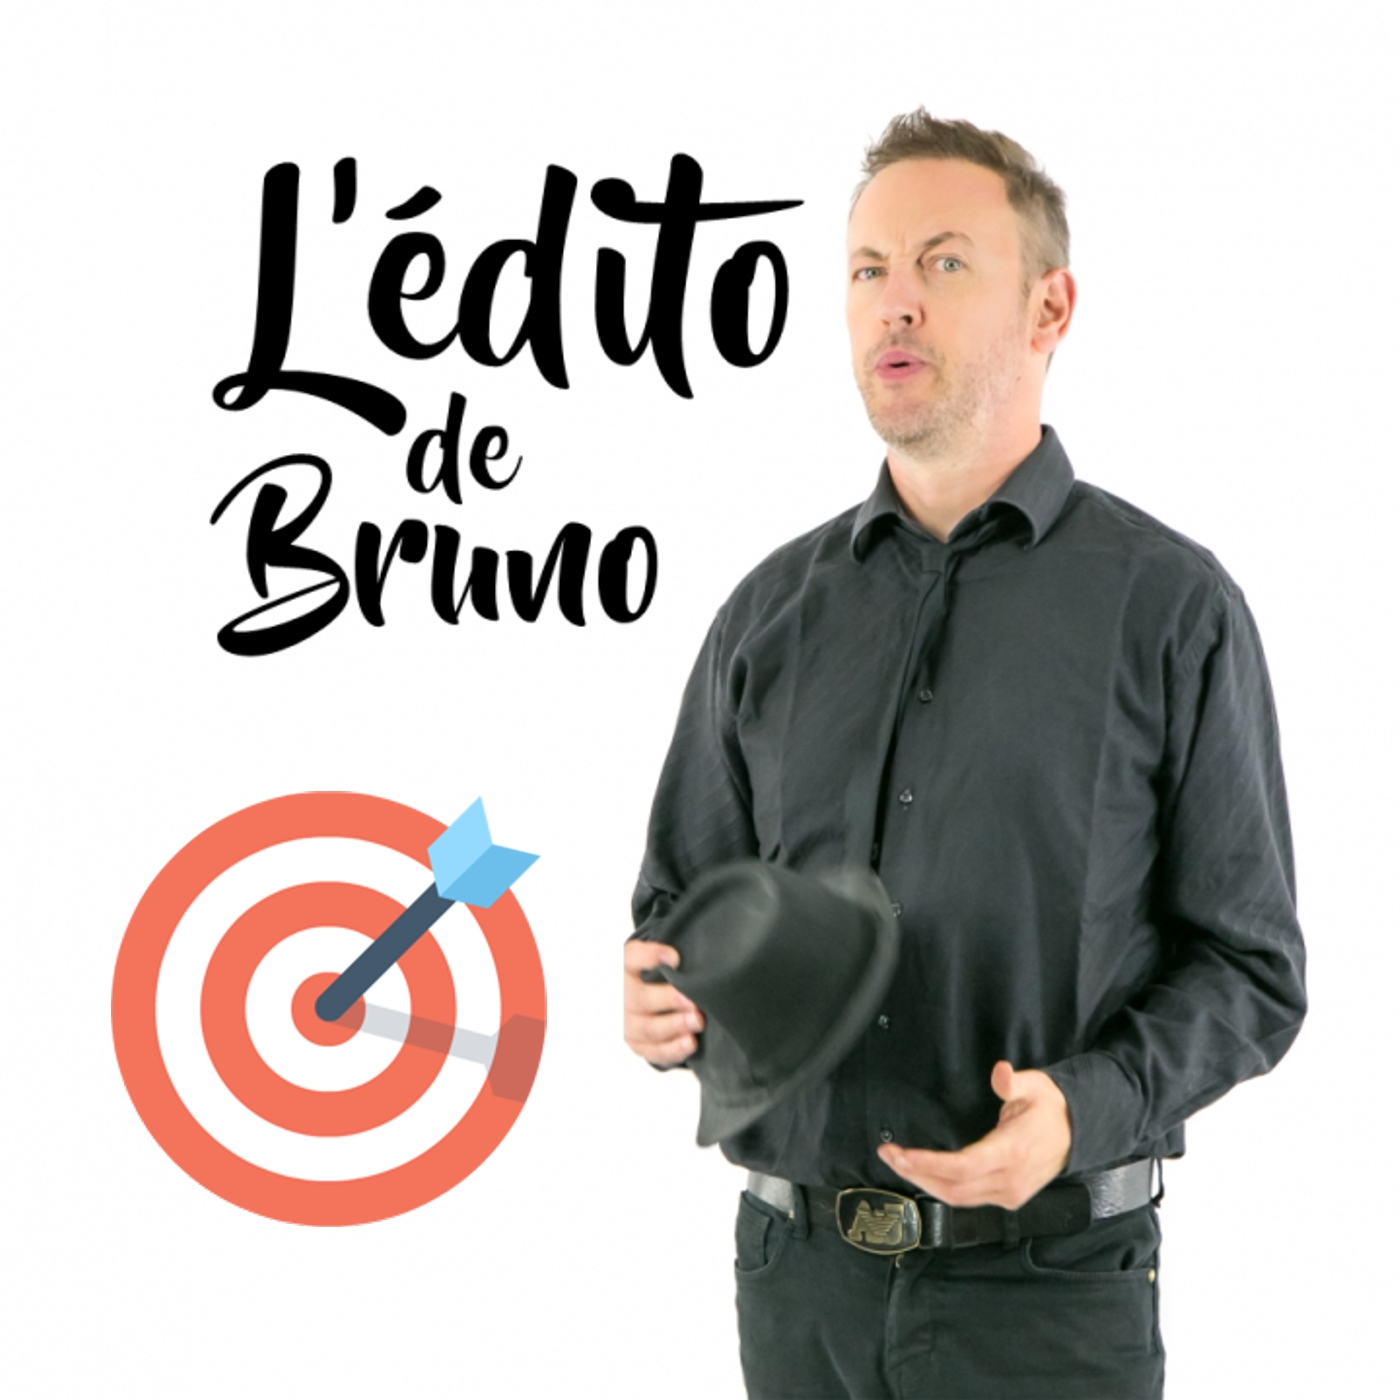 Edito Topette! du 03 10 2023 L'édito de Bruno de l'émission Tendance à m'plaire sur Radio G! Edito Topette! du 03 10 2023